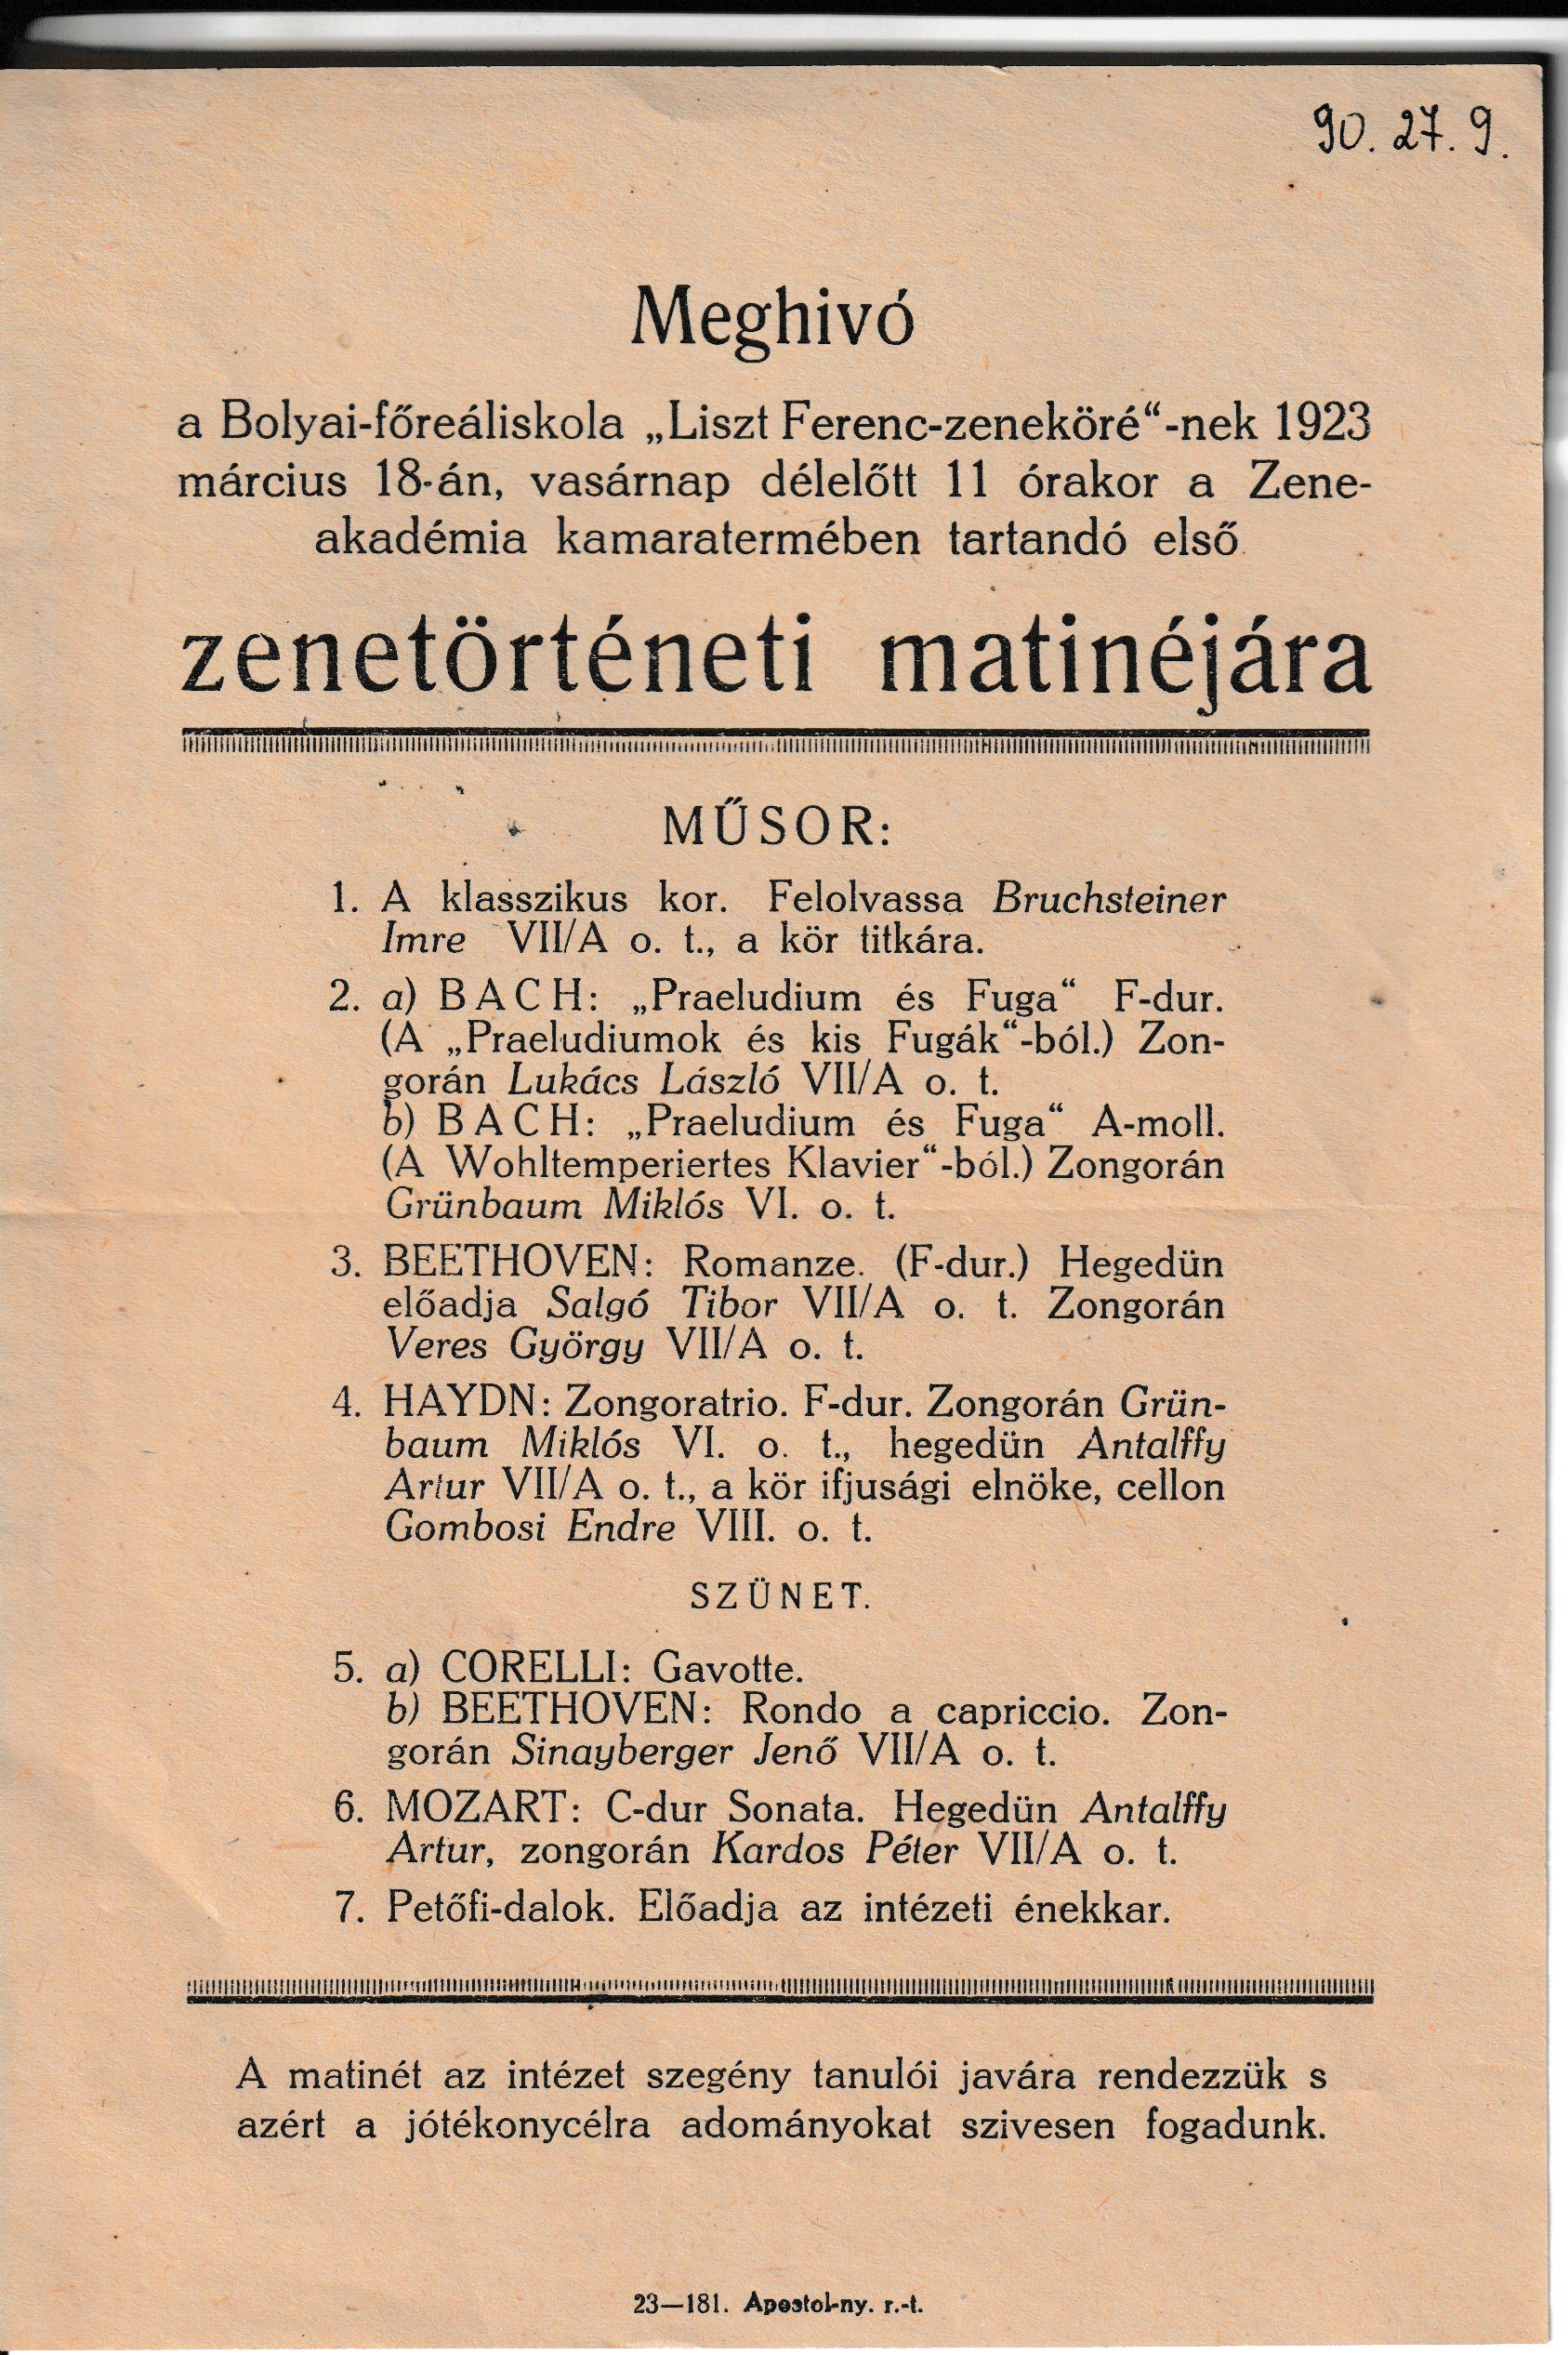 Meghívó iskolai zenetörténeti matinéra (Tapolcai Városi Múzeum CC BY-NC-SA)